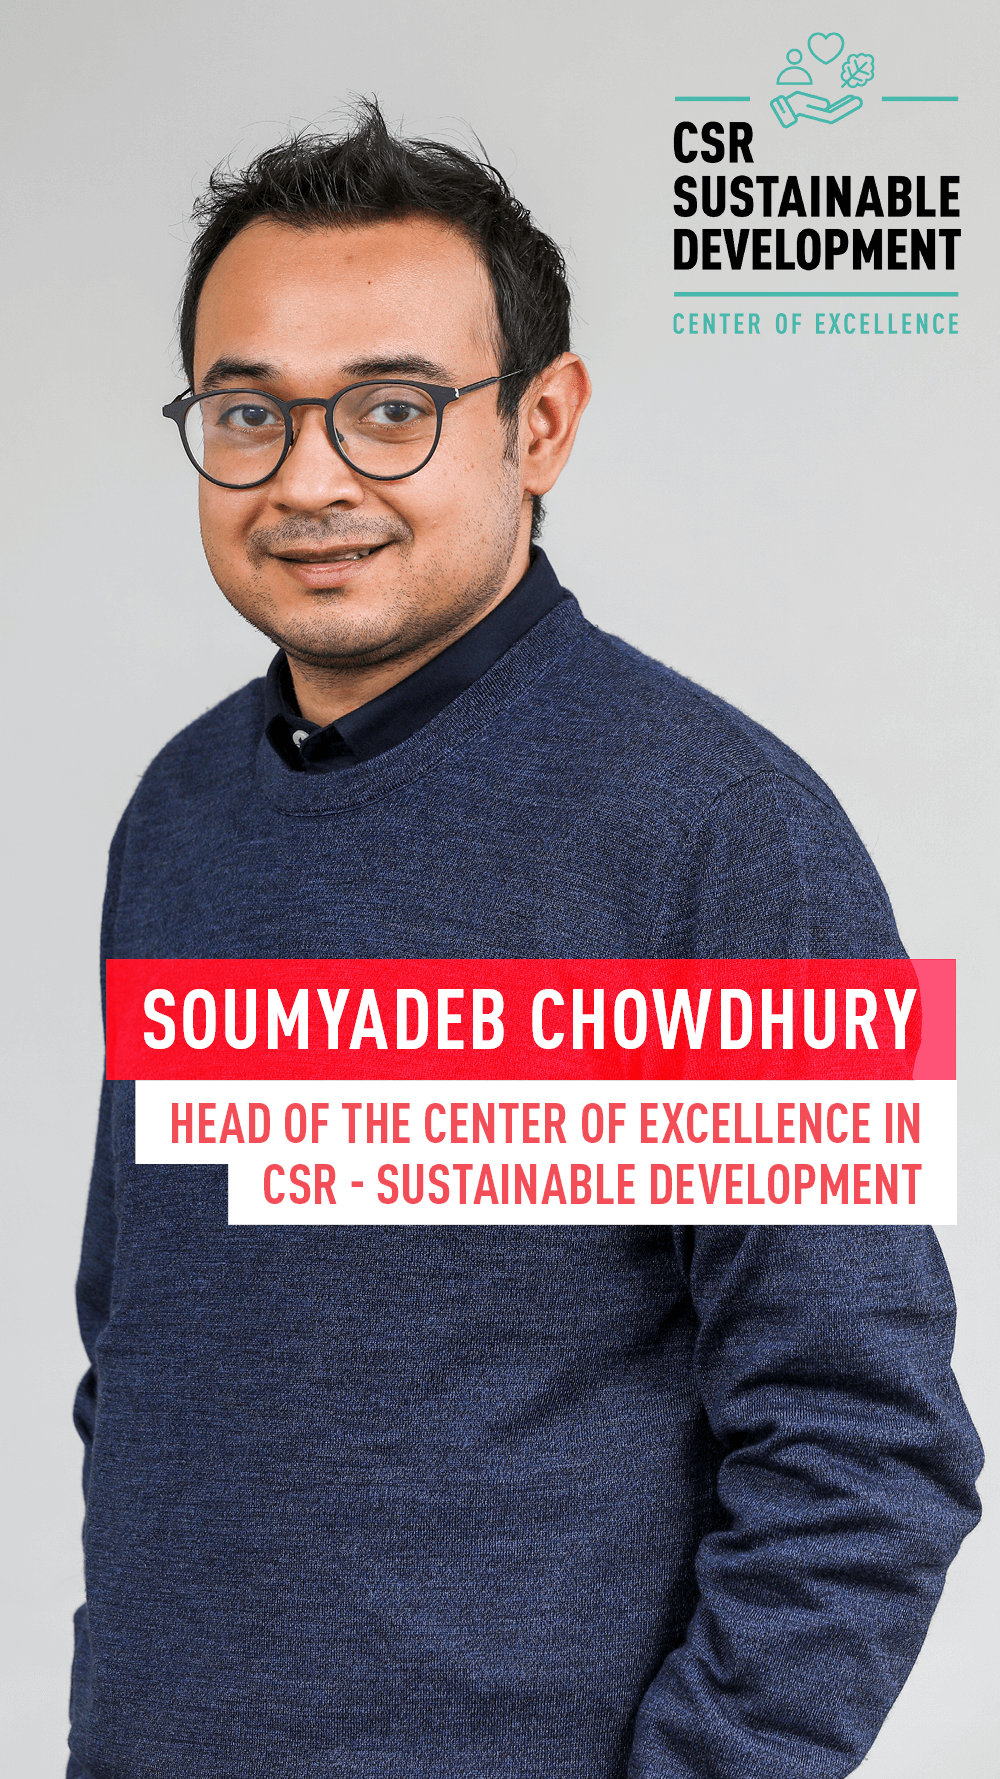 Soumyadeb Chowdhury